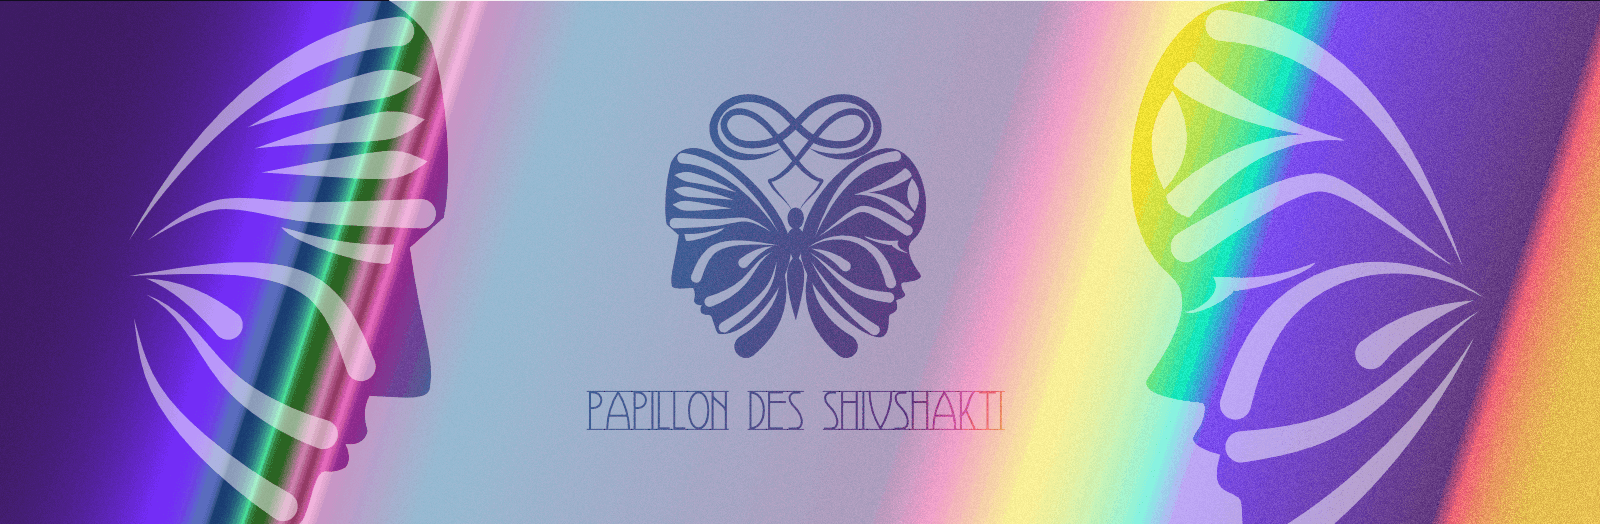 Papillon-des-ShivShakti 배너